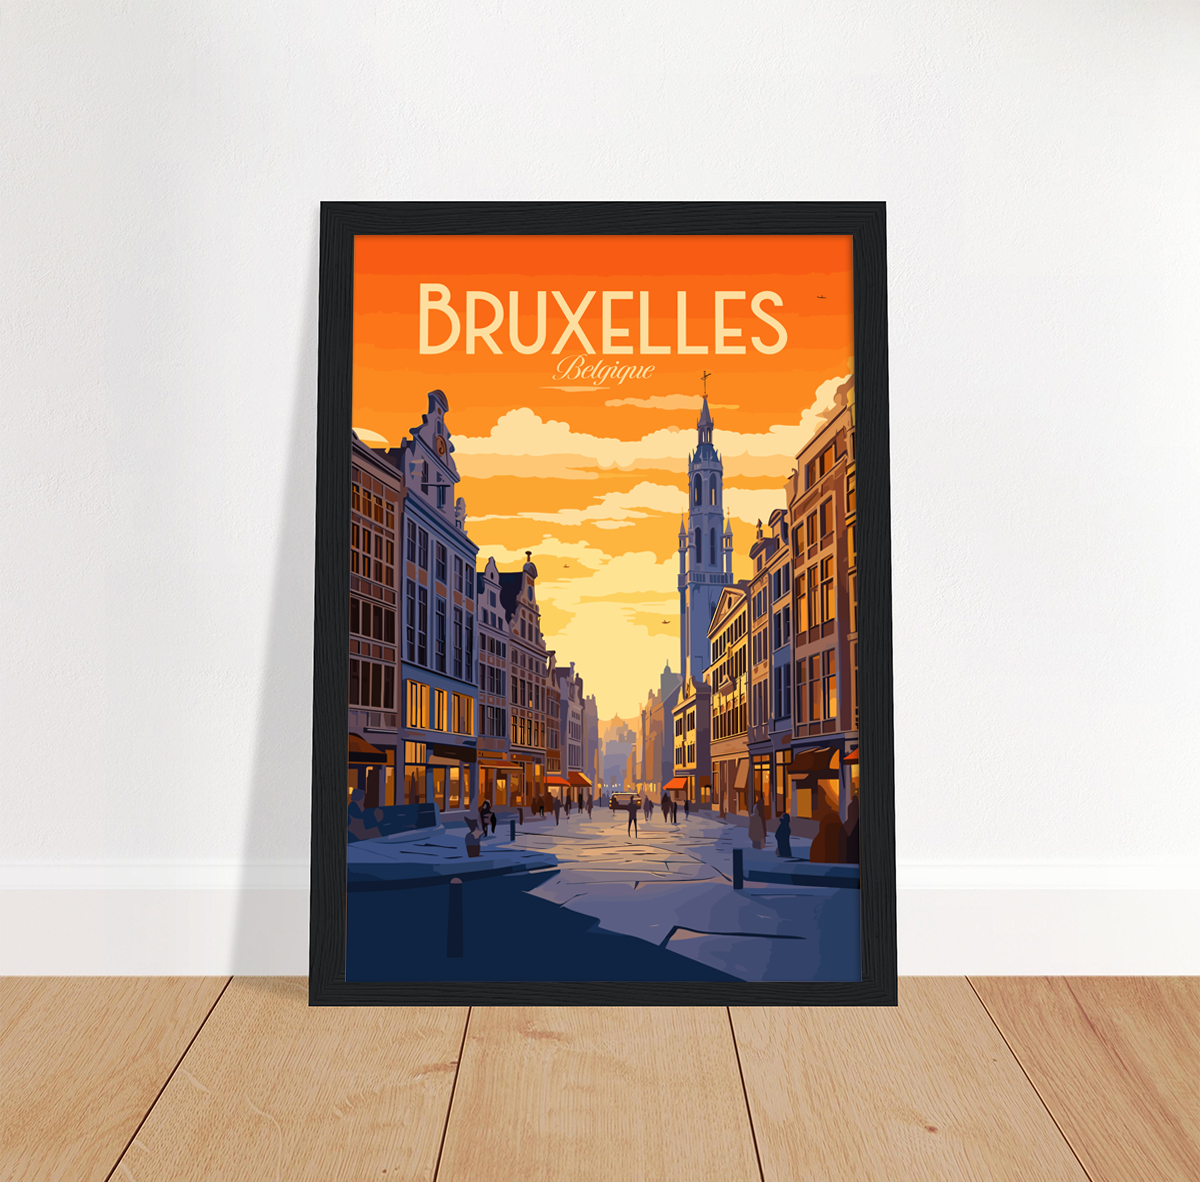 Bruxelles poster by bon voyage design